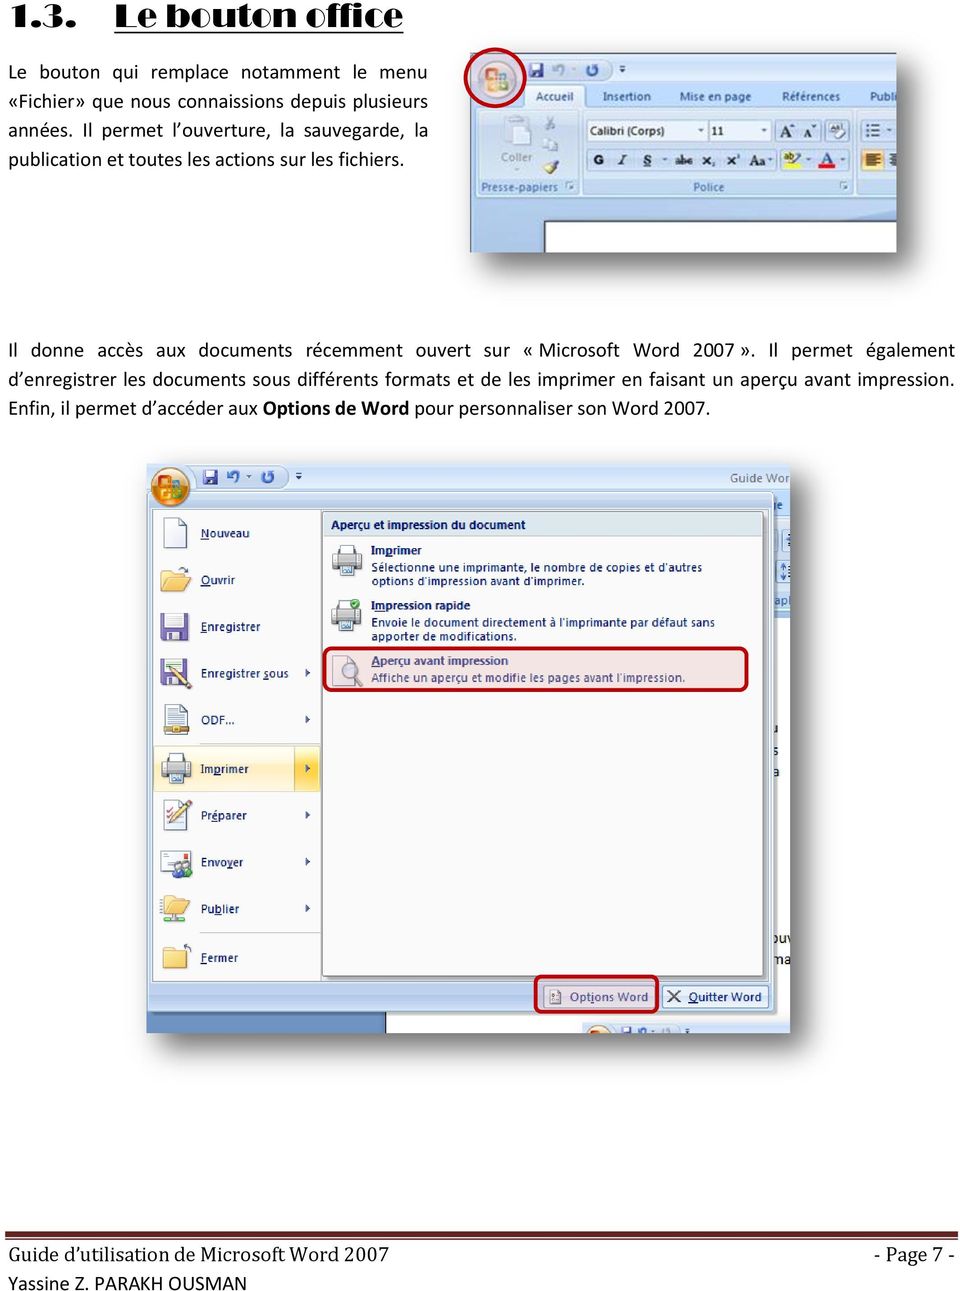 Il donne accès aux documents récemment ouvert sur «Microsoft Word 2007».